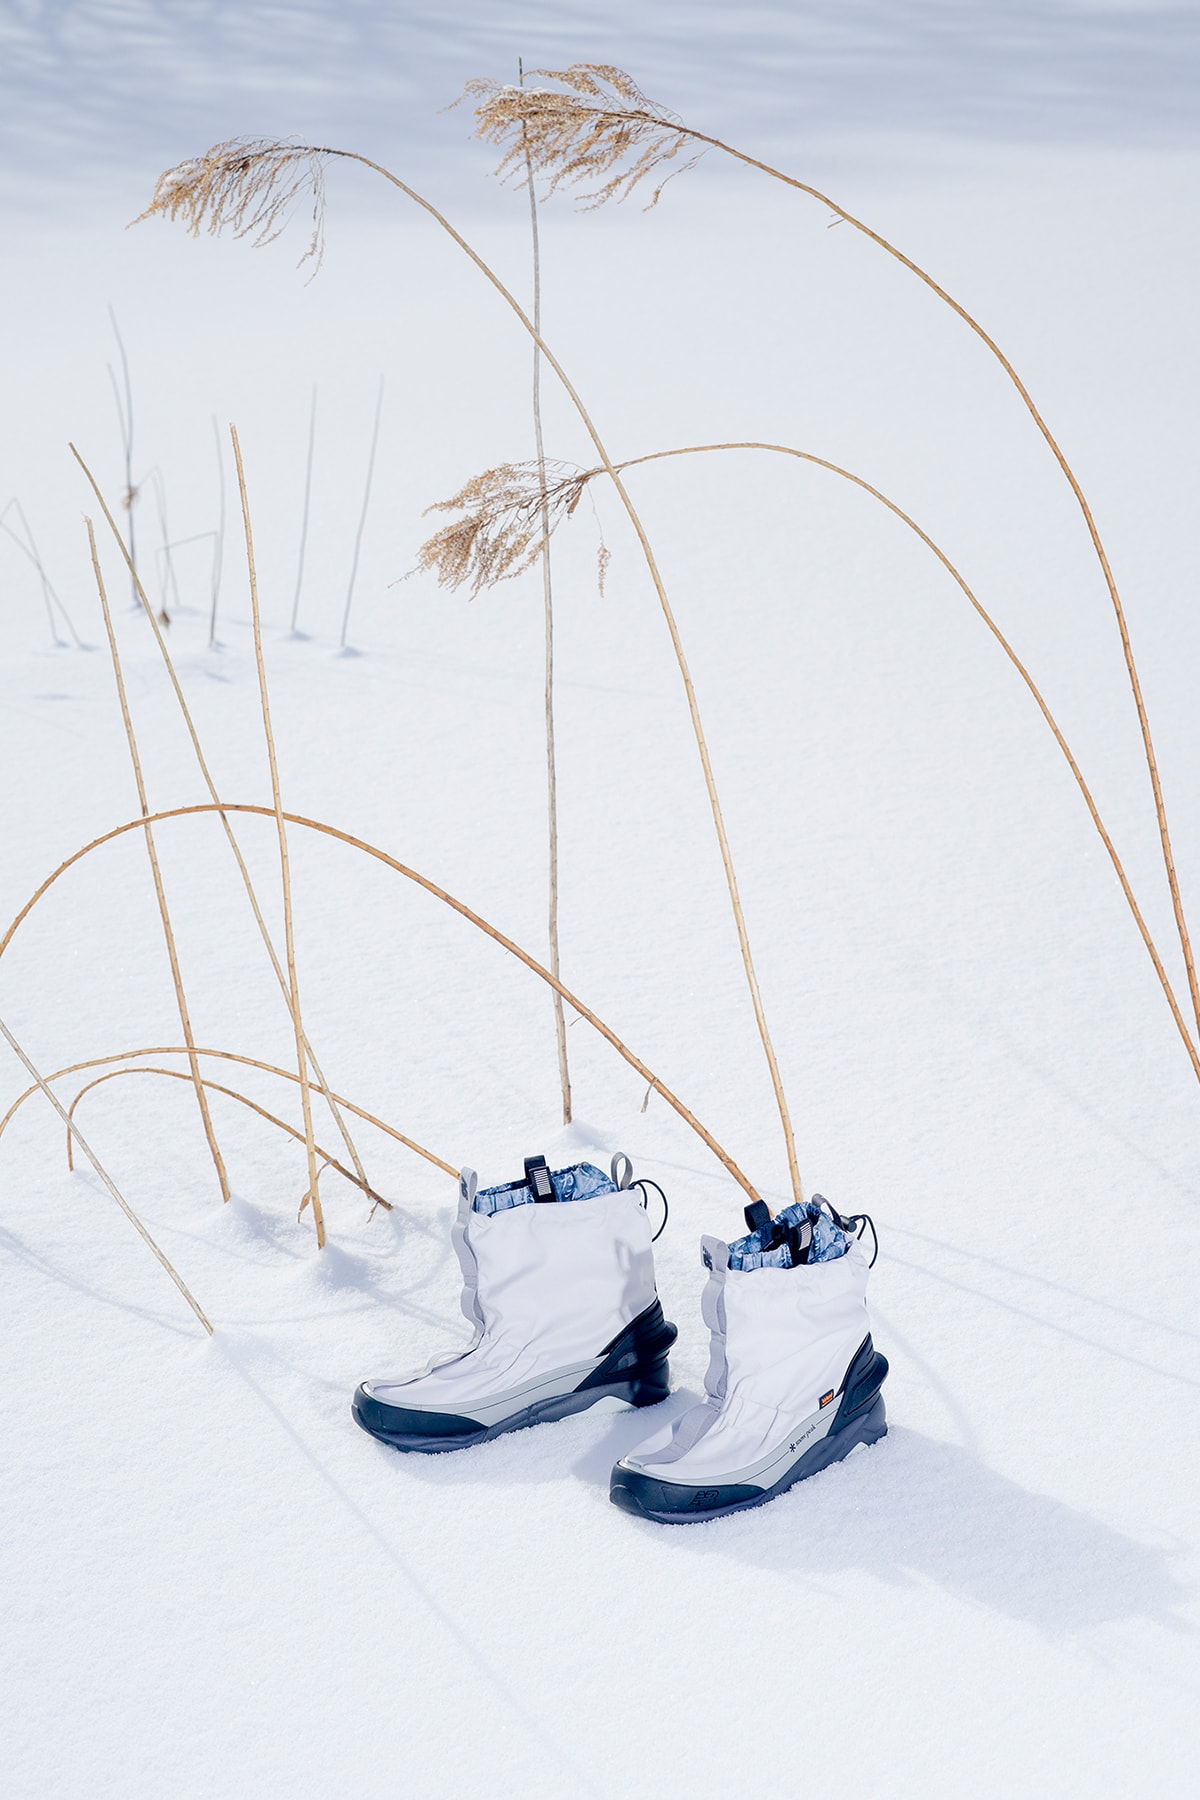 東京デザインスタジオ ニューバランス x スノーピークによるカプセルコレクション第5弾が到着 Snow Peak x TOKYO DESIGN STUDIO New Balance Niobium Concept 3 Capsule Collection release info